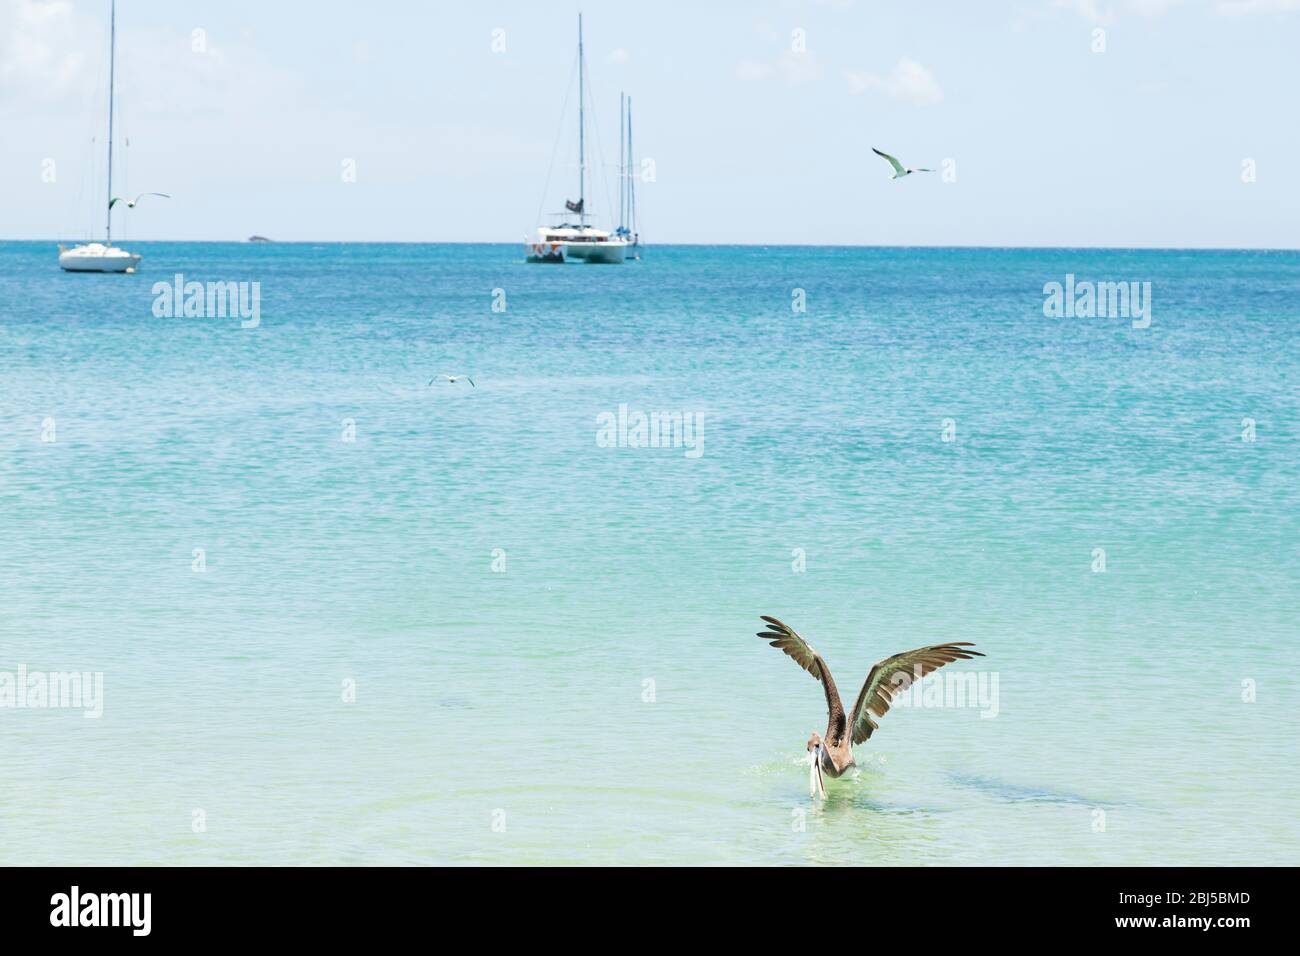 Ein Pelikan unten im Bild öffnet seine Rechnung, um einen Fisch mit Yachten im Hintergrund zu bekommen Stockfoto